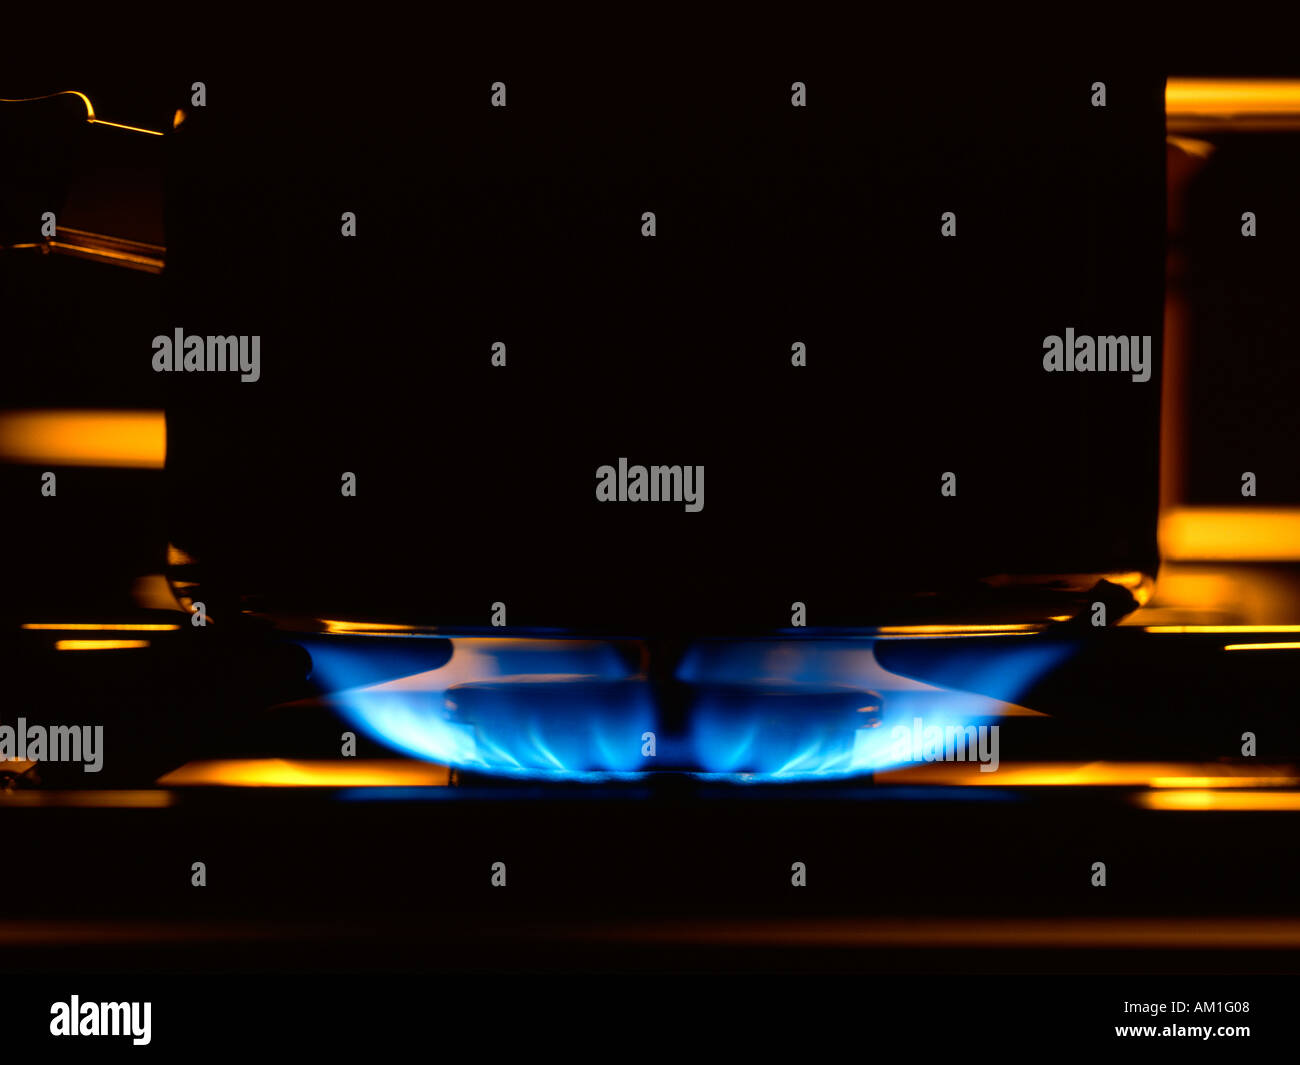 Flamme de gaz sur une cuisinière vitrocéramique Banque D'Images